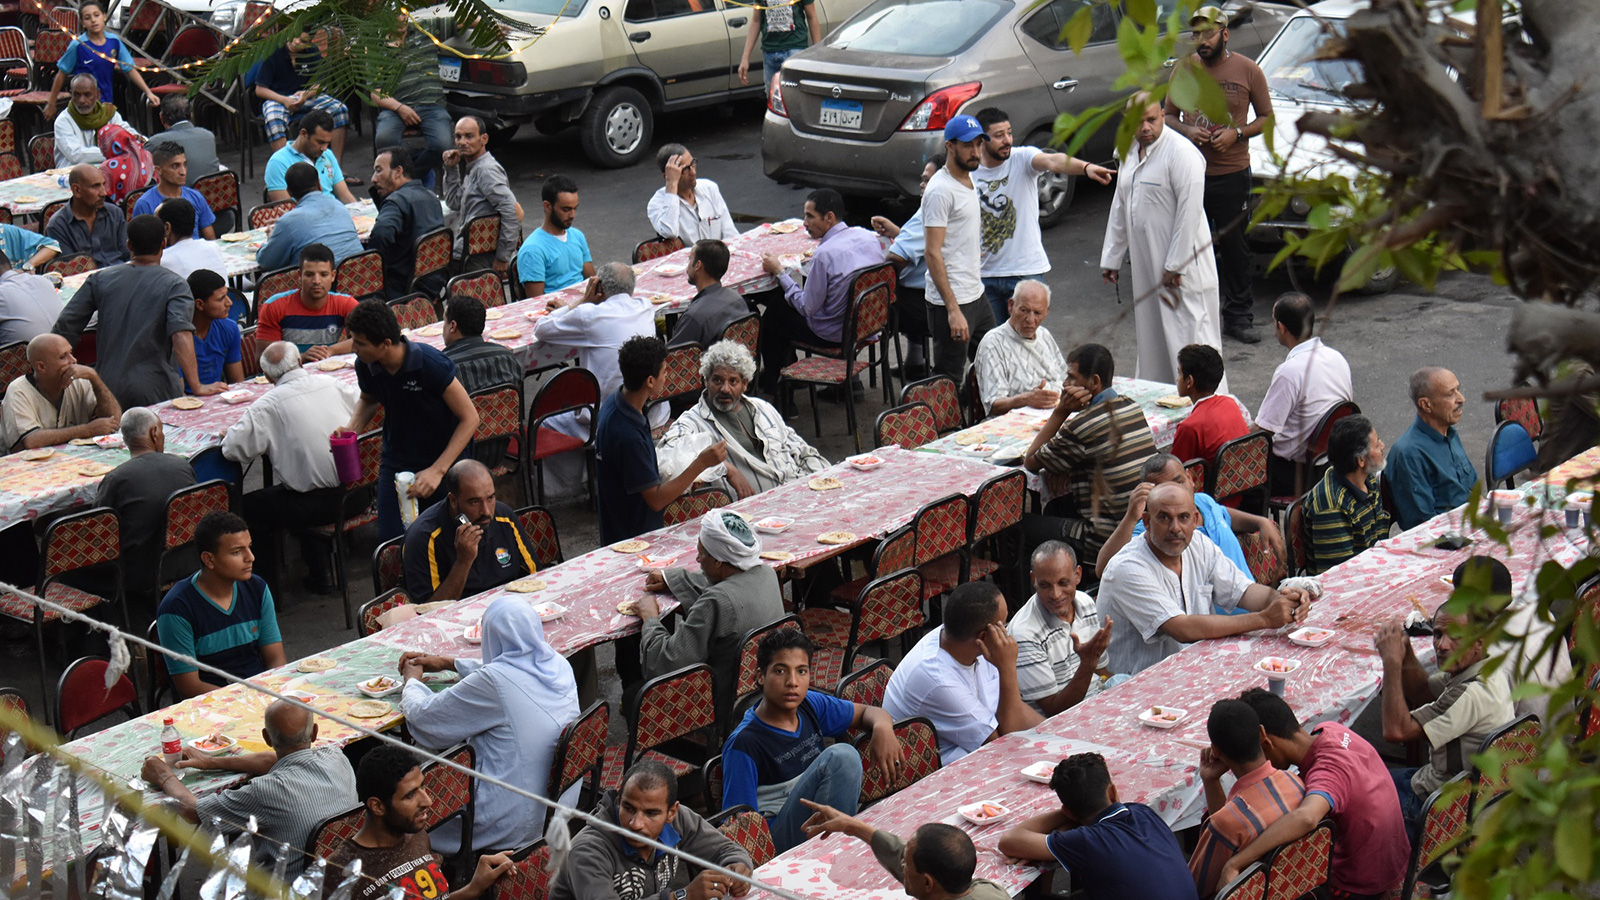 آلاف الموائد كانت تقام في مصر خلال شهر رمضان وتطعم ملايين الفقراء (الجزيرة)